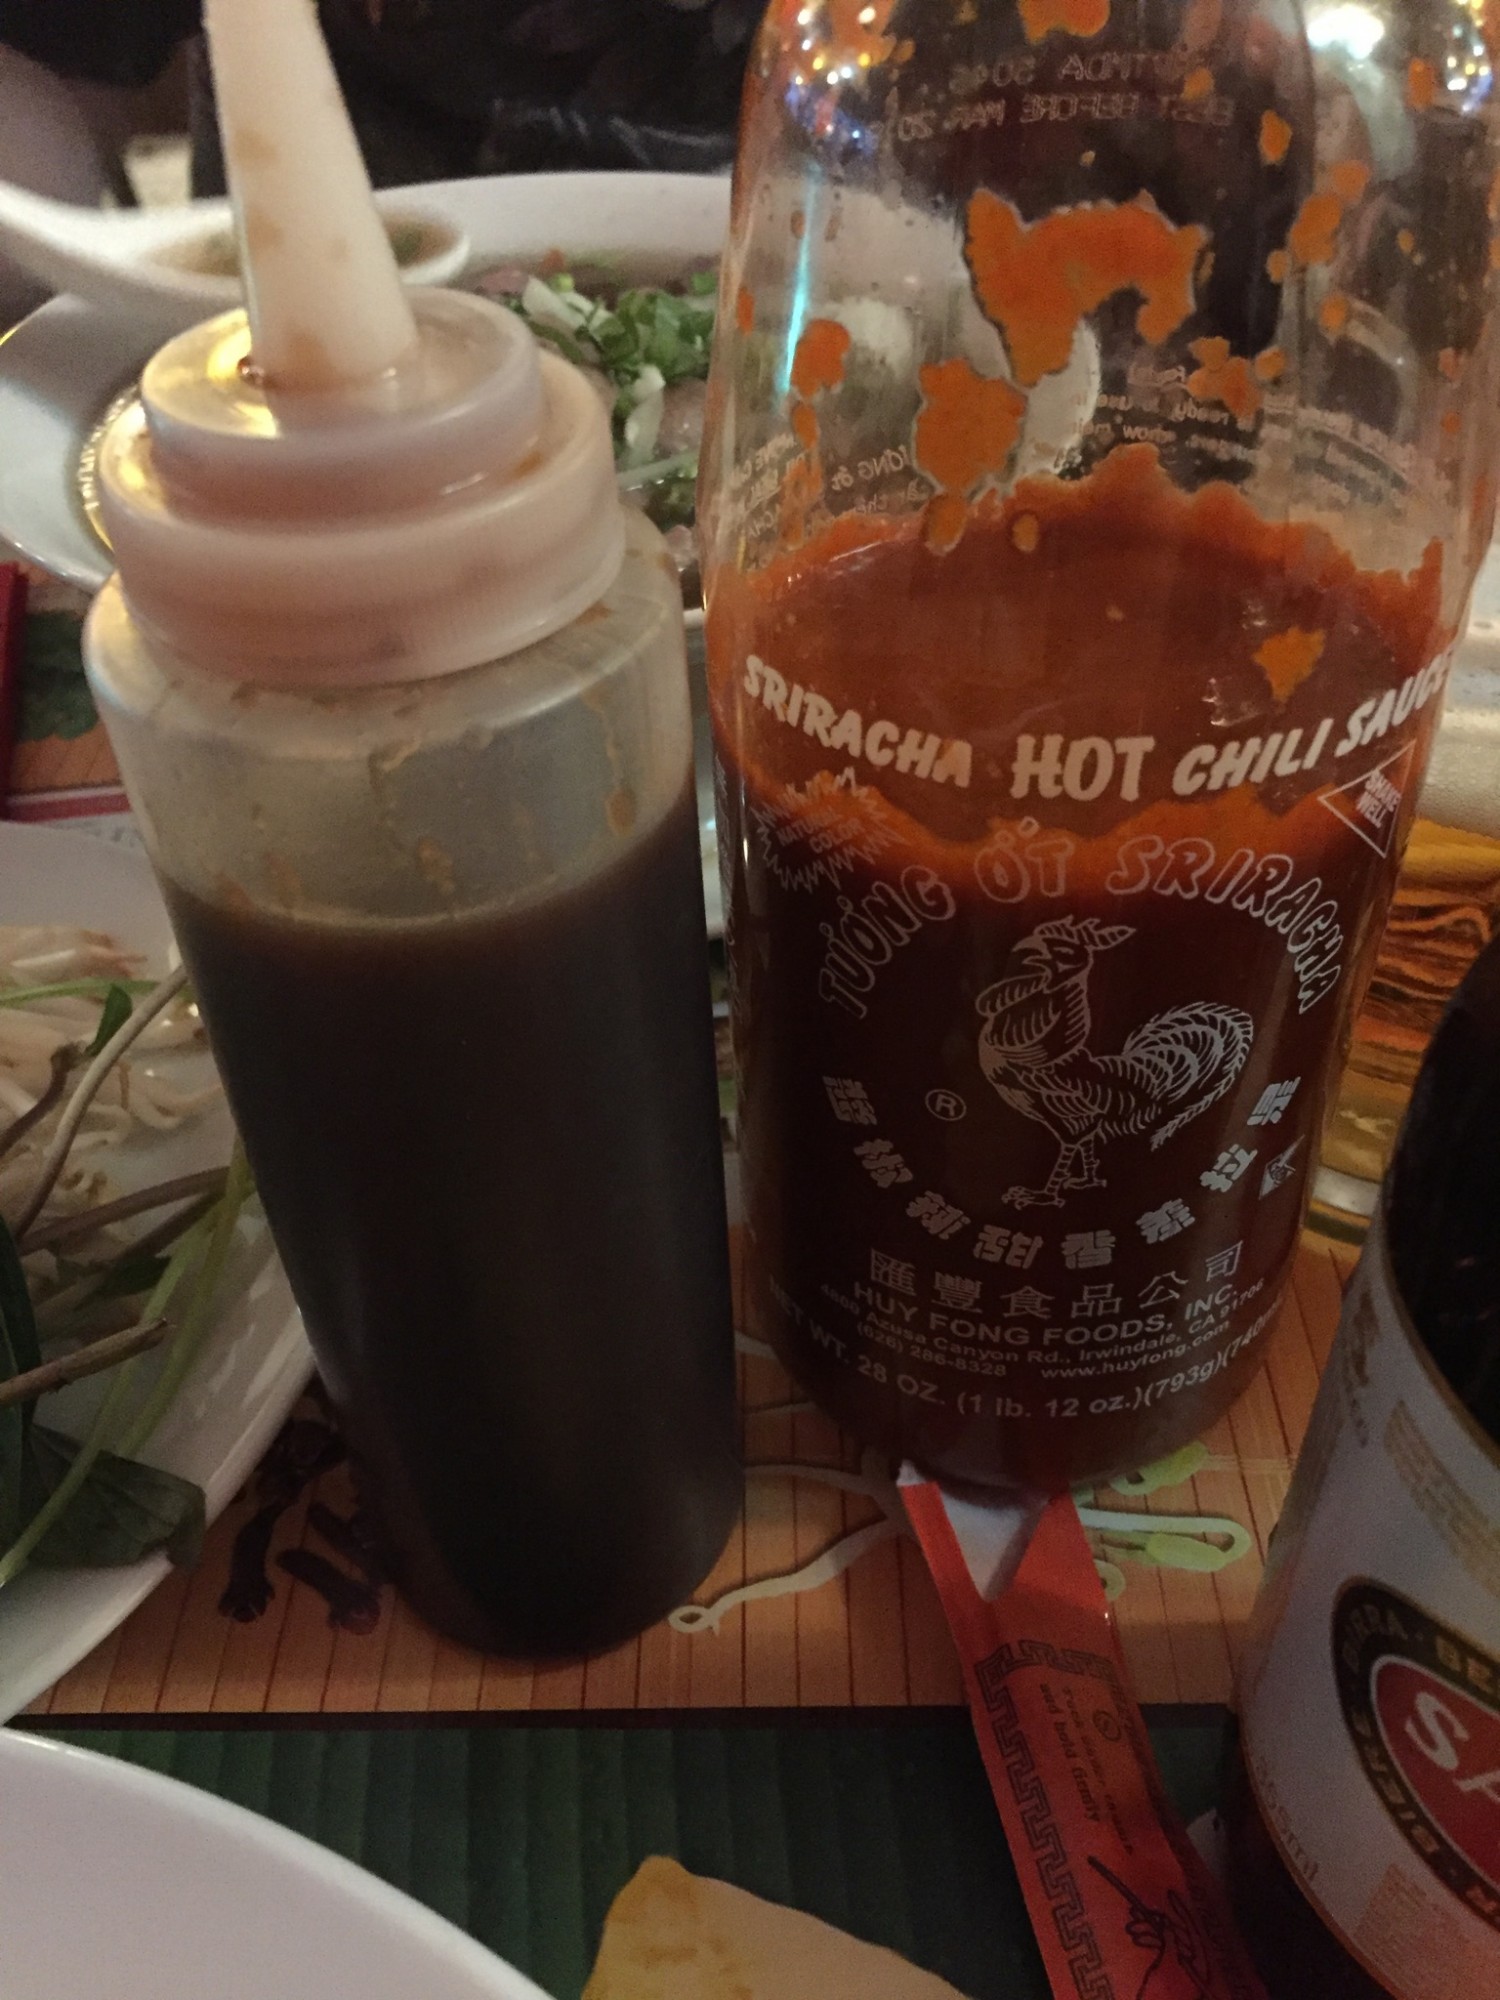 Hoisin sauce og sriracha hot chili sauce.